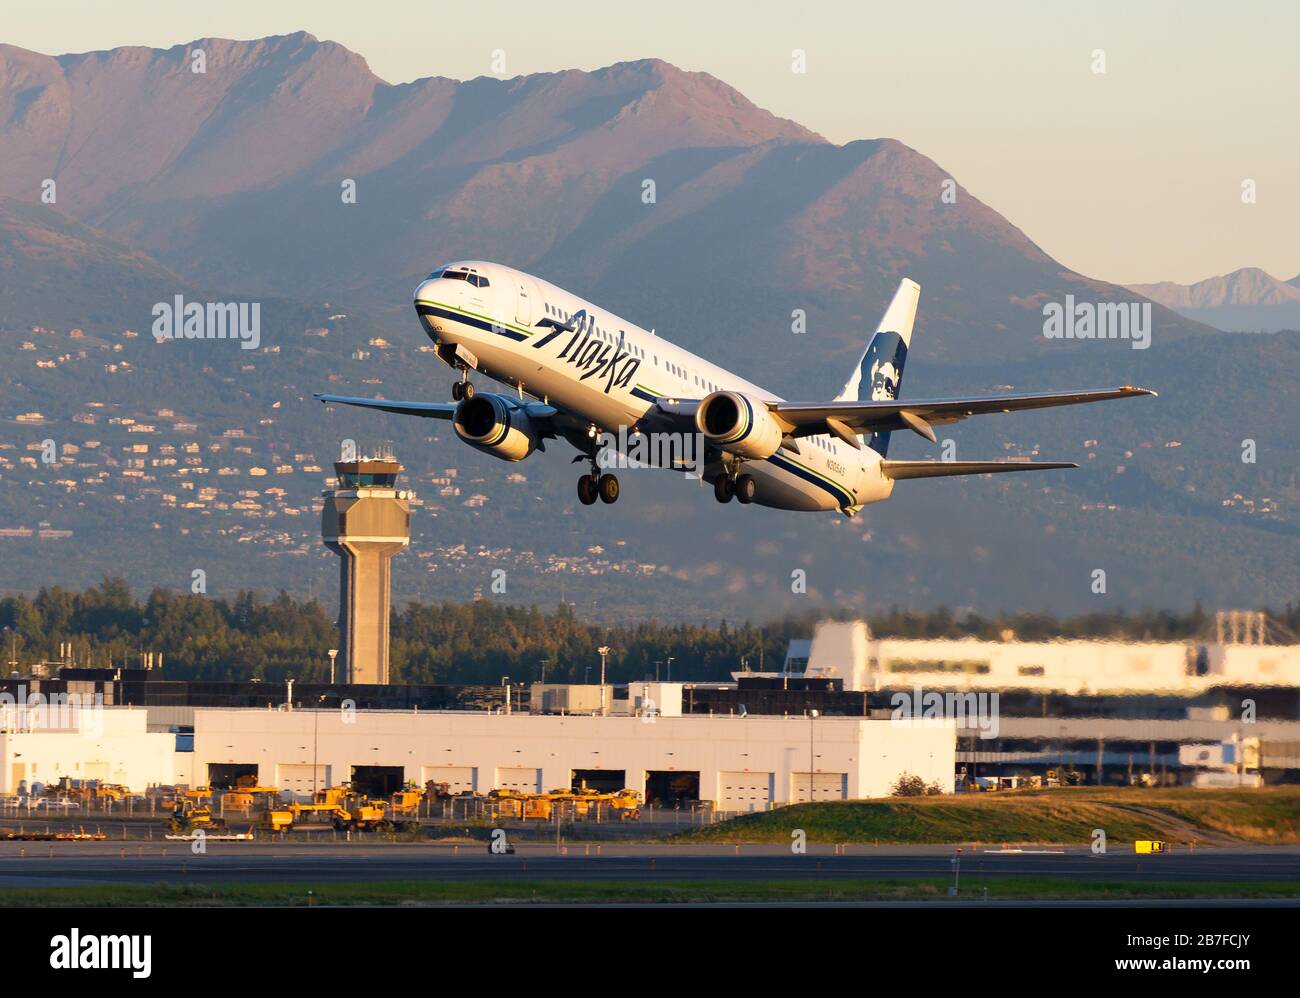 Le Boeing 737 d'Alaska Airlines quitte l'aéroport d'Anchorage en face de la tour de contrôle de la circulation aérienne et des montagnes. Aéronefs immatriculés comme N305 AS. Banque D'Images